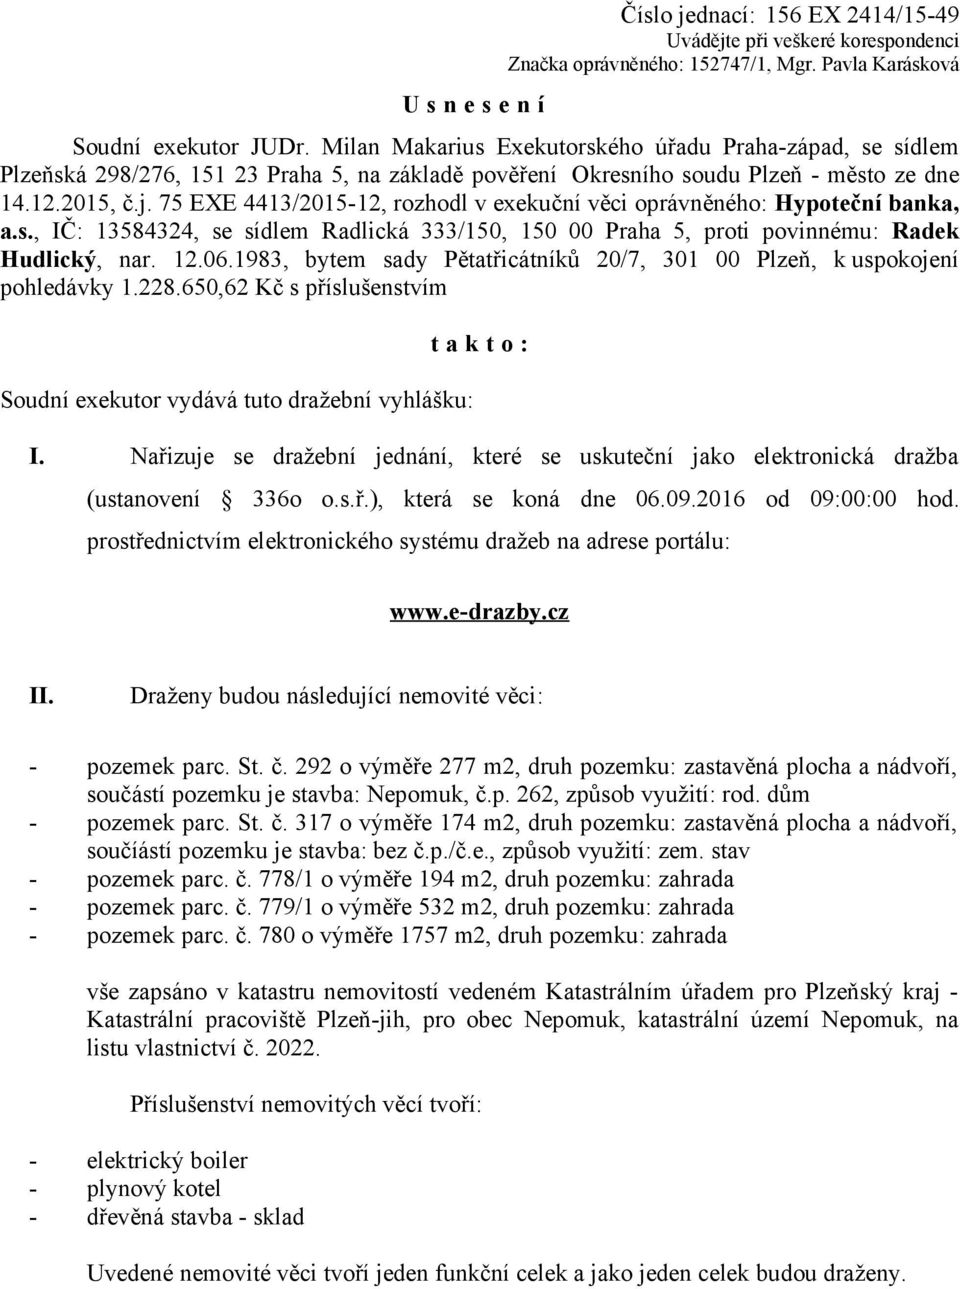 75 EXE 4413/2015-12, rozhodl v exekuční věci oprávněného: Hypoteční banka, a.s., IČ: 13584324, se sídlem Radlická 333/150, 150 00 Praha 5, proti povinnému: Radek Hudlický, nar. 12.06.